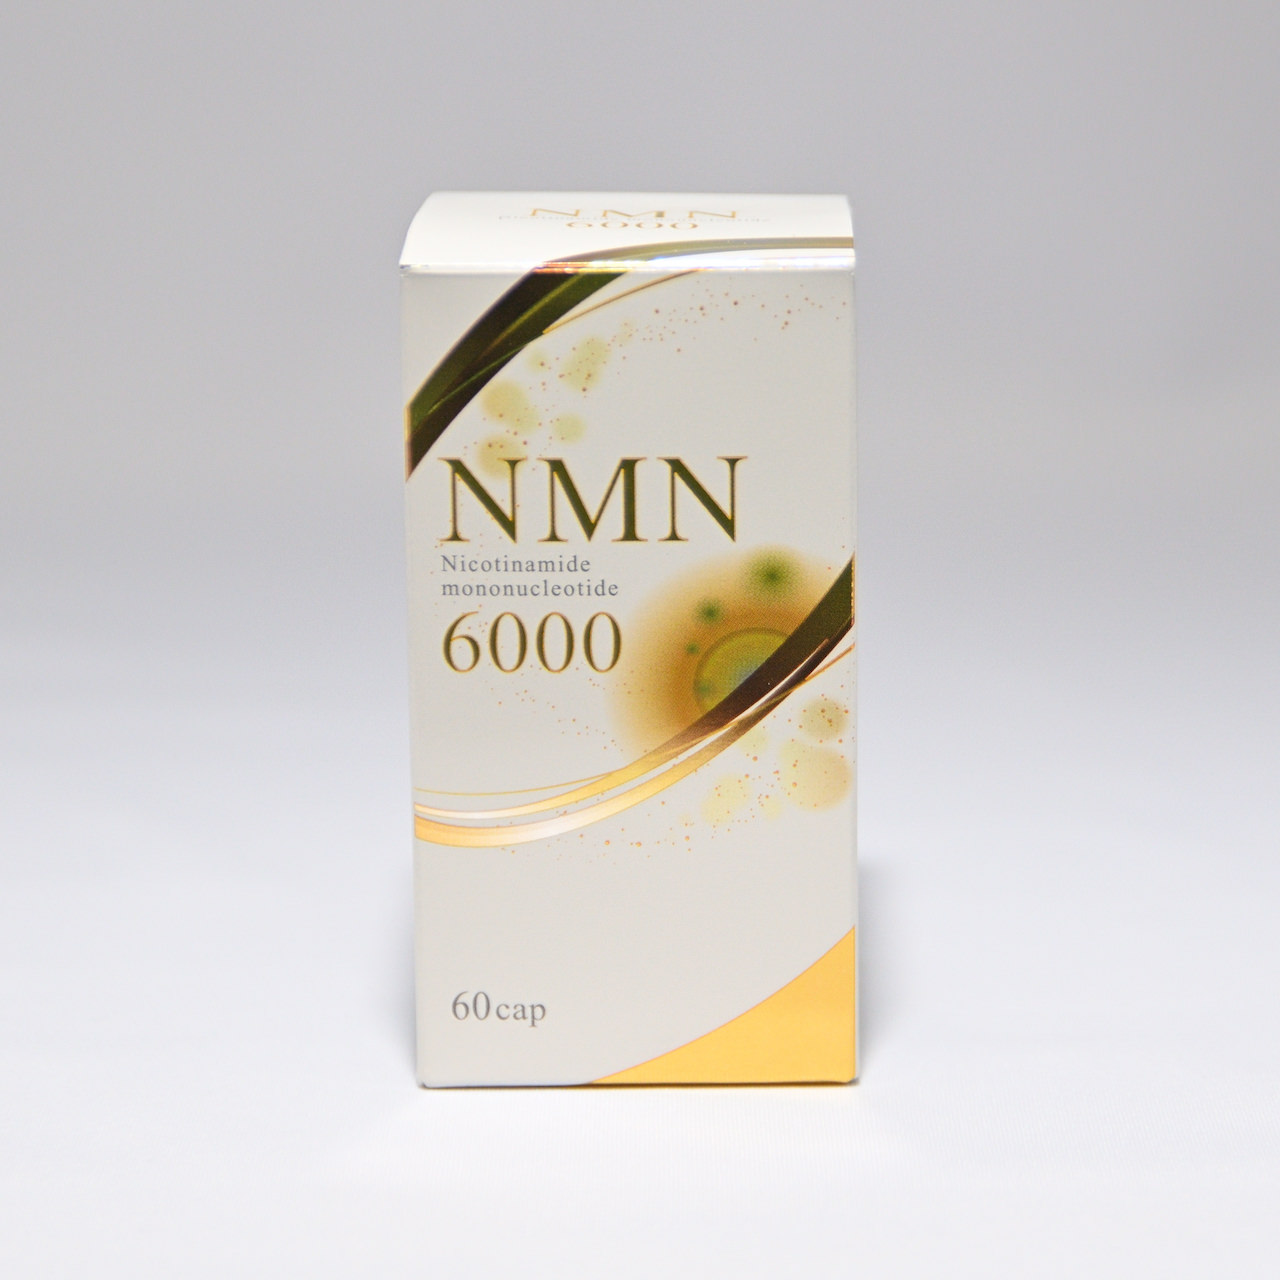 NMNサプリ 日本製サプリメント 掛布雅之さんもご愛飲 NMN6000のご案内